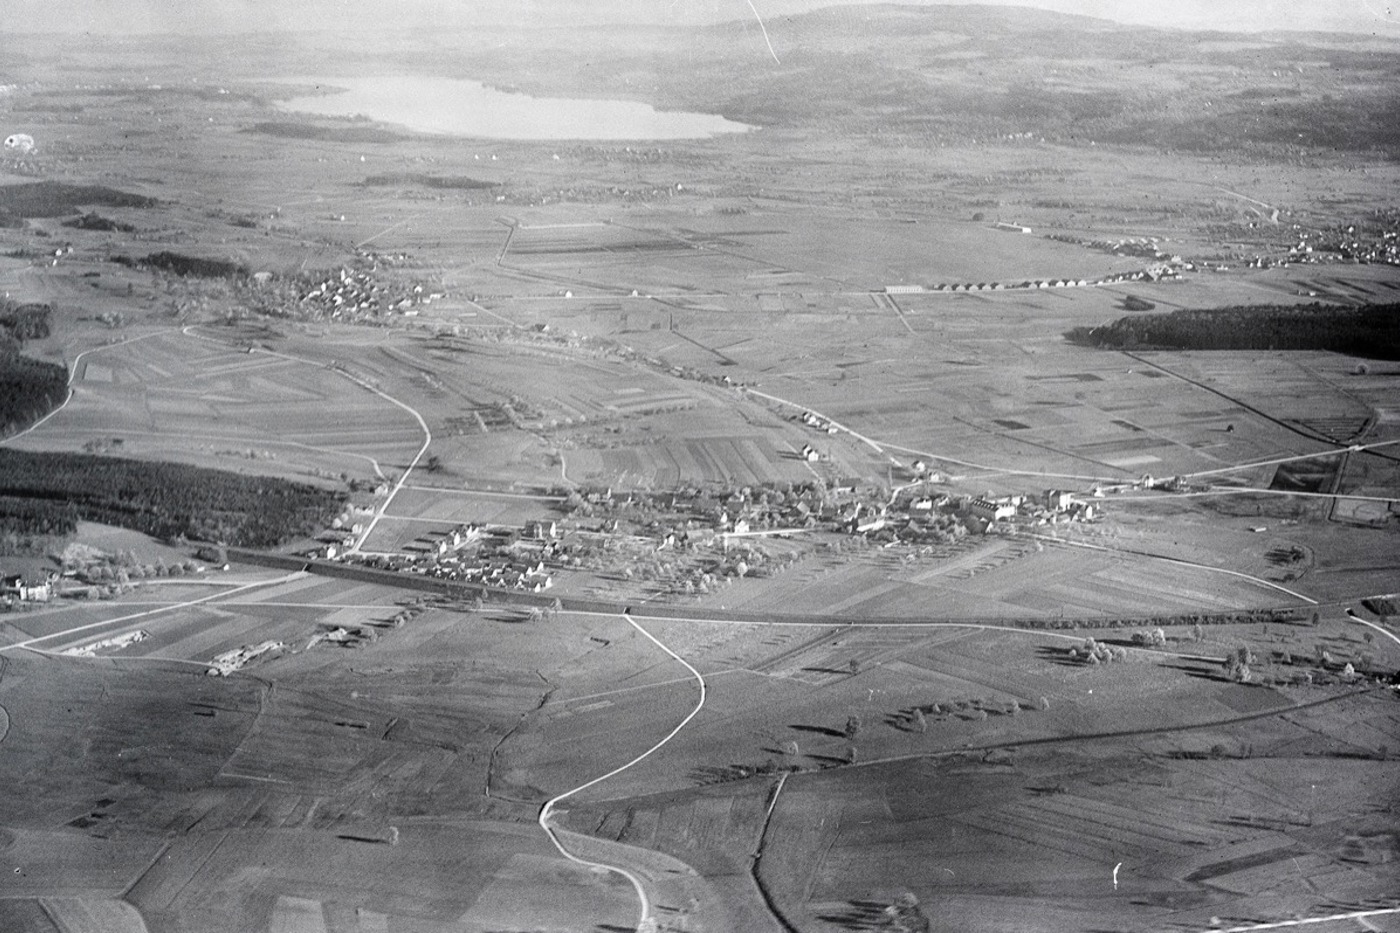 Die Ebene nördlich des Greifensees war vor 100 Jahren dominiert von Mooren und Riedwiesen. Im oberen Drittel rechts sind die Gebäude des Flughafens Dübendorf zu sehen. Die Flugzeuge landeten noch auf der Wiese. © e-pics ETH-BIB, Walter Mittelholzer 1919